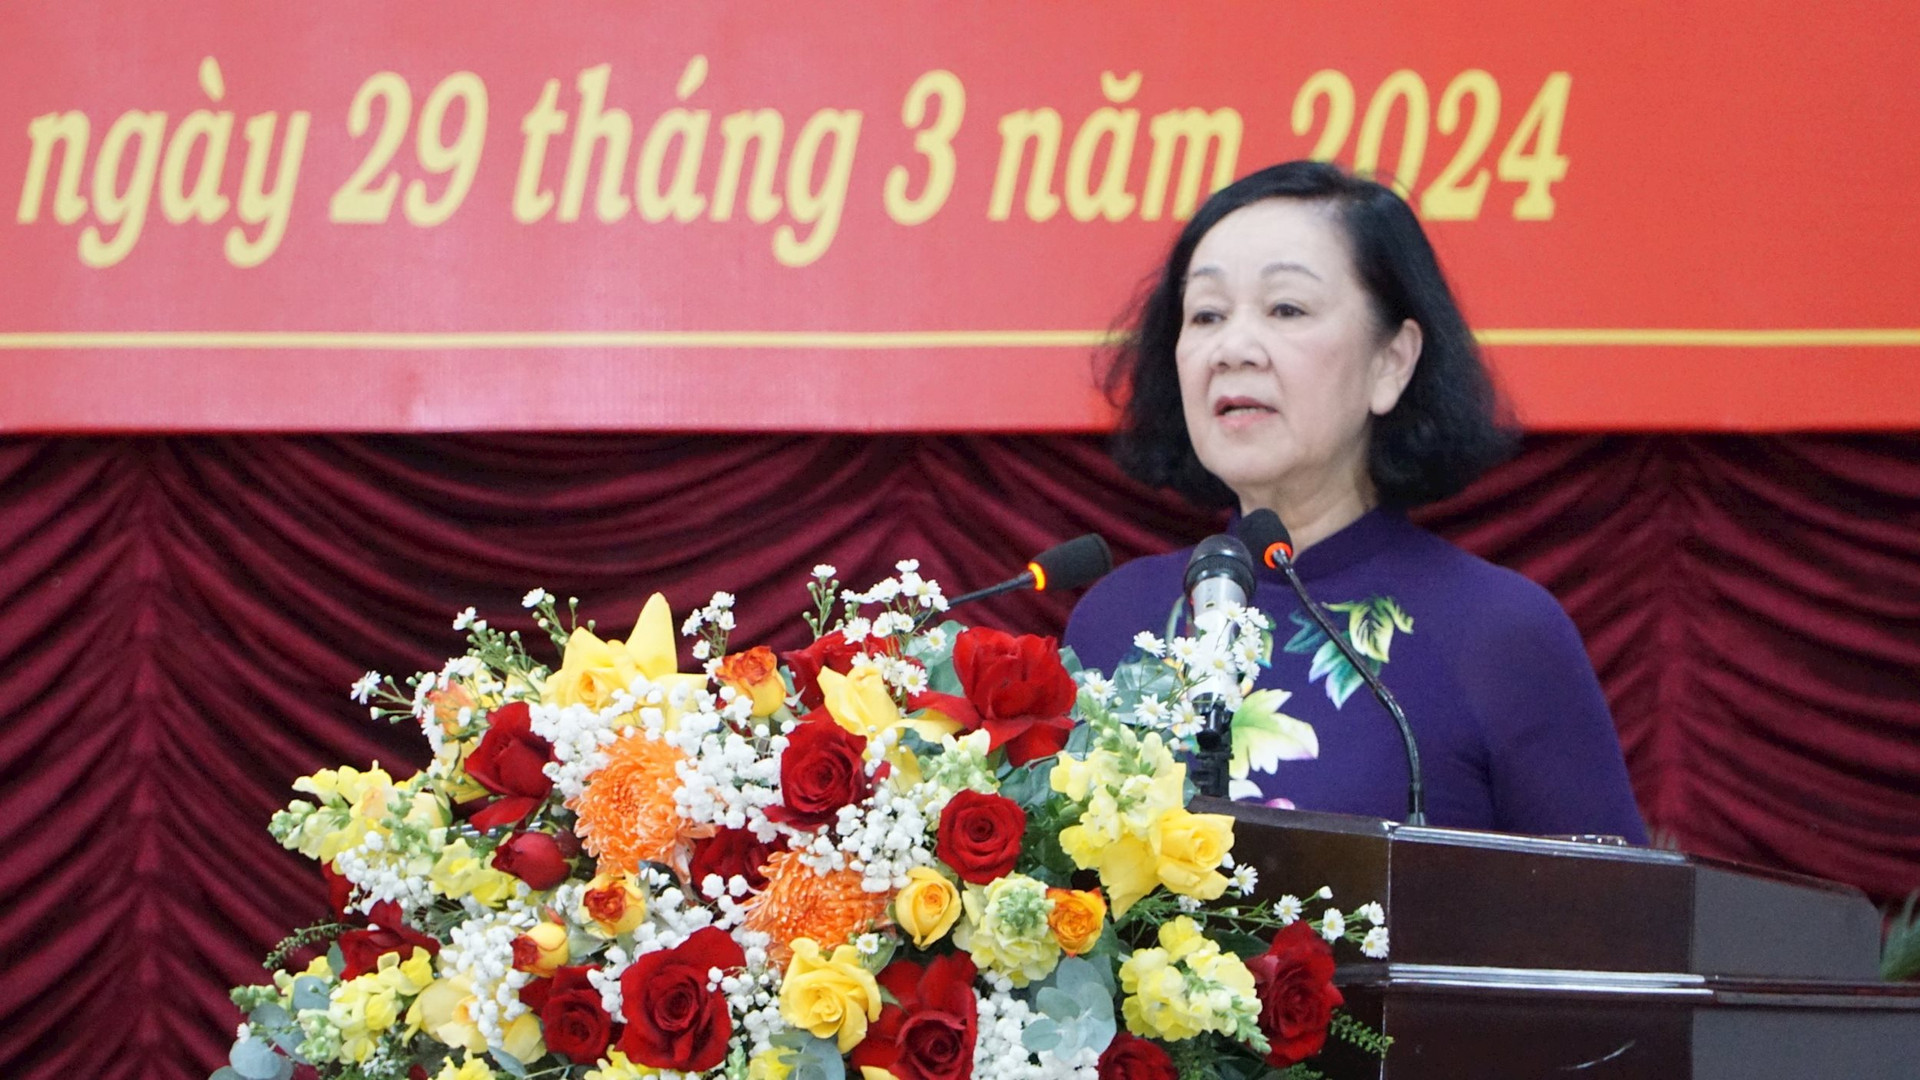 Bộ Chính trị chuẩn y ông Nguyễn Hoài Anh giữ chức Bí thư Tỉnh ủy Bình Thuận- Ảnh 1.